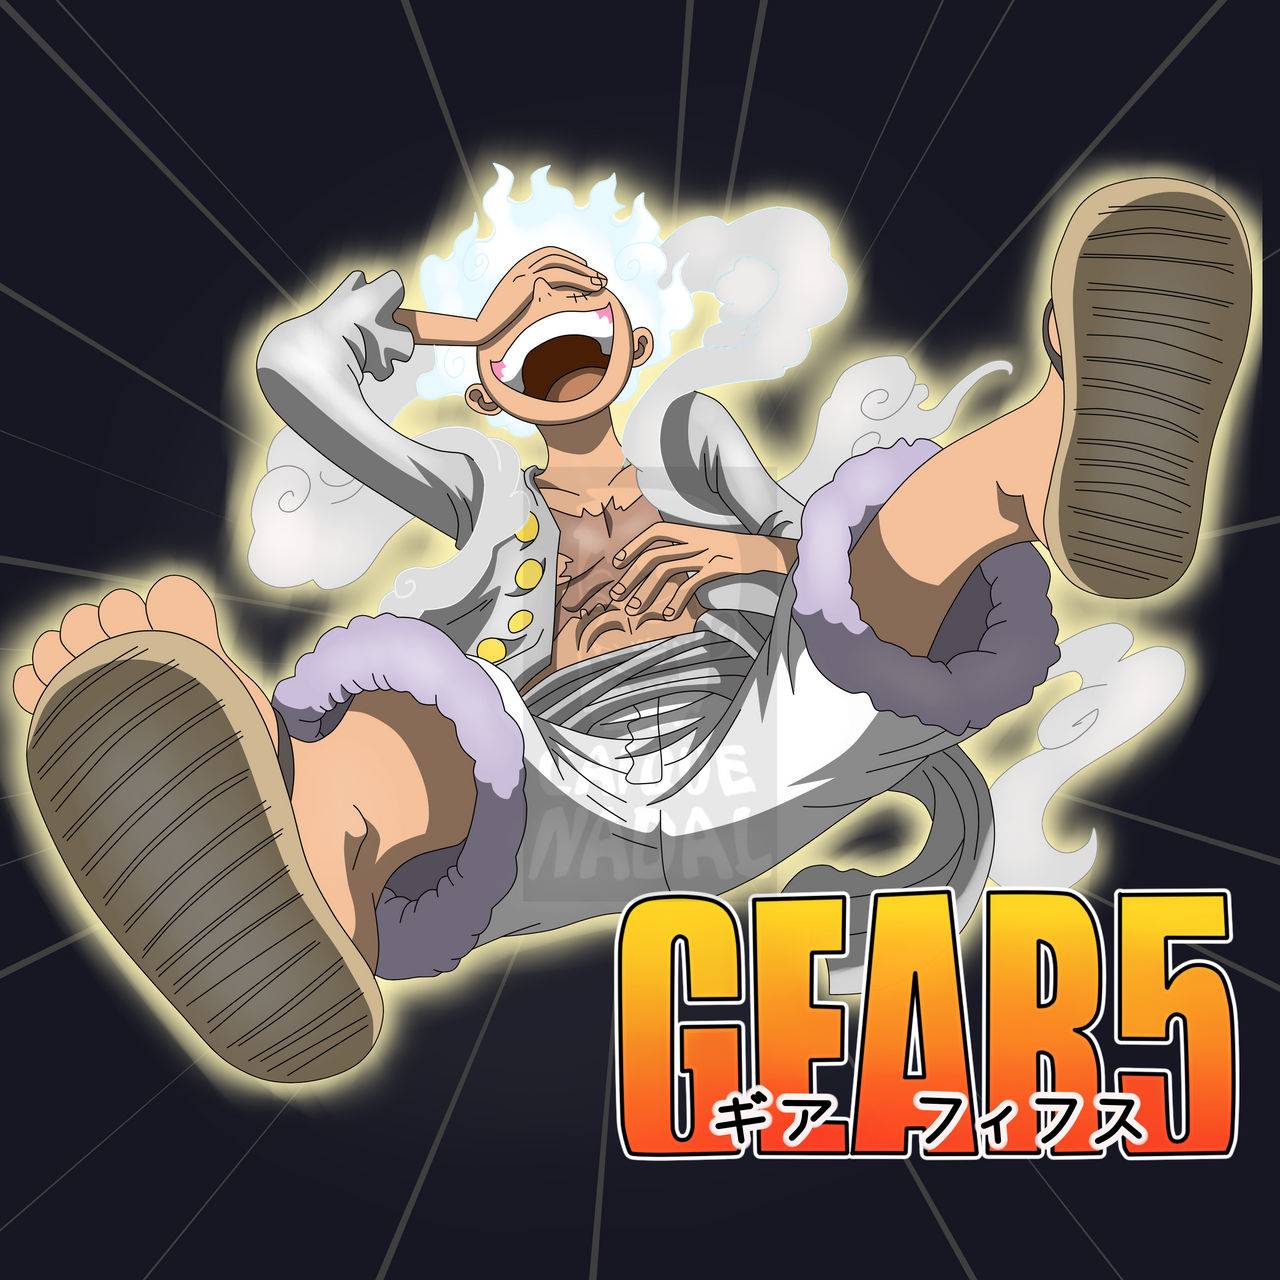 Hình nền Luffy Gear 5, hình nền Luffy God Nika - QuanTriMang.com